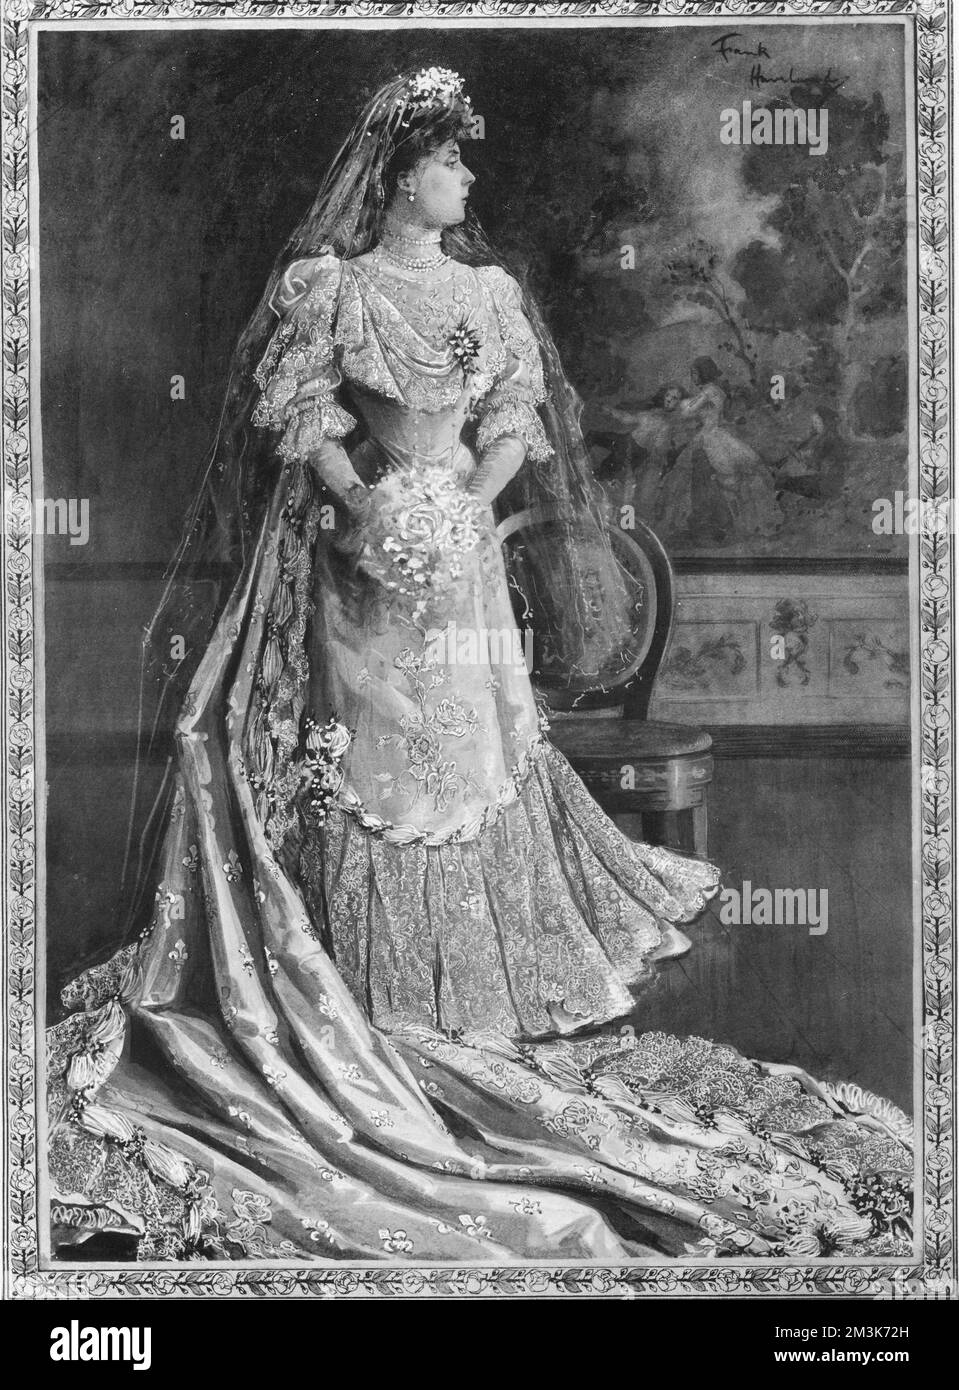 Königin von Spanien in ihrem Hochzeitskleid. Nach spanischem Brauch war das Kleid ein Geschenk ihres Mannes und es dauerte 56 Tage, bis vierzig spanische Frauen fertig waren. Er bestand aus weißem und silbernem Satin, besetzt mit Rosenspitze, mit einer 1,5 cm langen Spitze und Orangenblüten. Die ehemalige Prinzessin Ena von Battenberg (1887-1969) war die Tochter von Prinzessin Beatrice und Prinz Heinrich von Battenberg und verbrachte ihre Kindheit in den Häusern ihrer Großmutter Queen Victoria. Sie heiratete König Alfonso XIII. Im Mai 1906, nachdem sie zum Katholizismus konvertiert war. Das Paar entkam knapp einem dramatischen Attentat Stockfoto